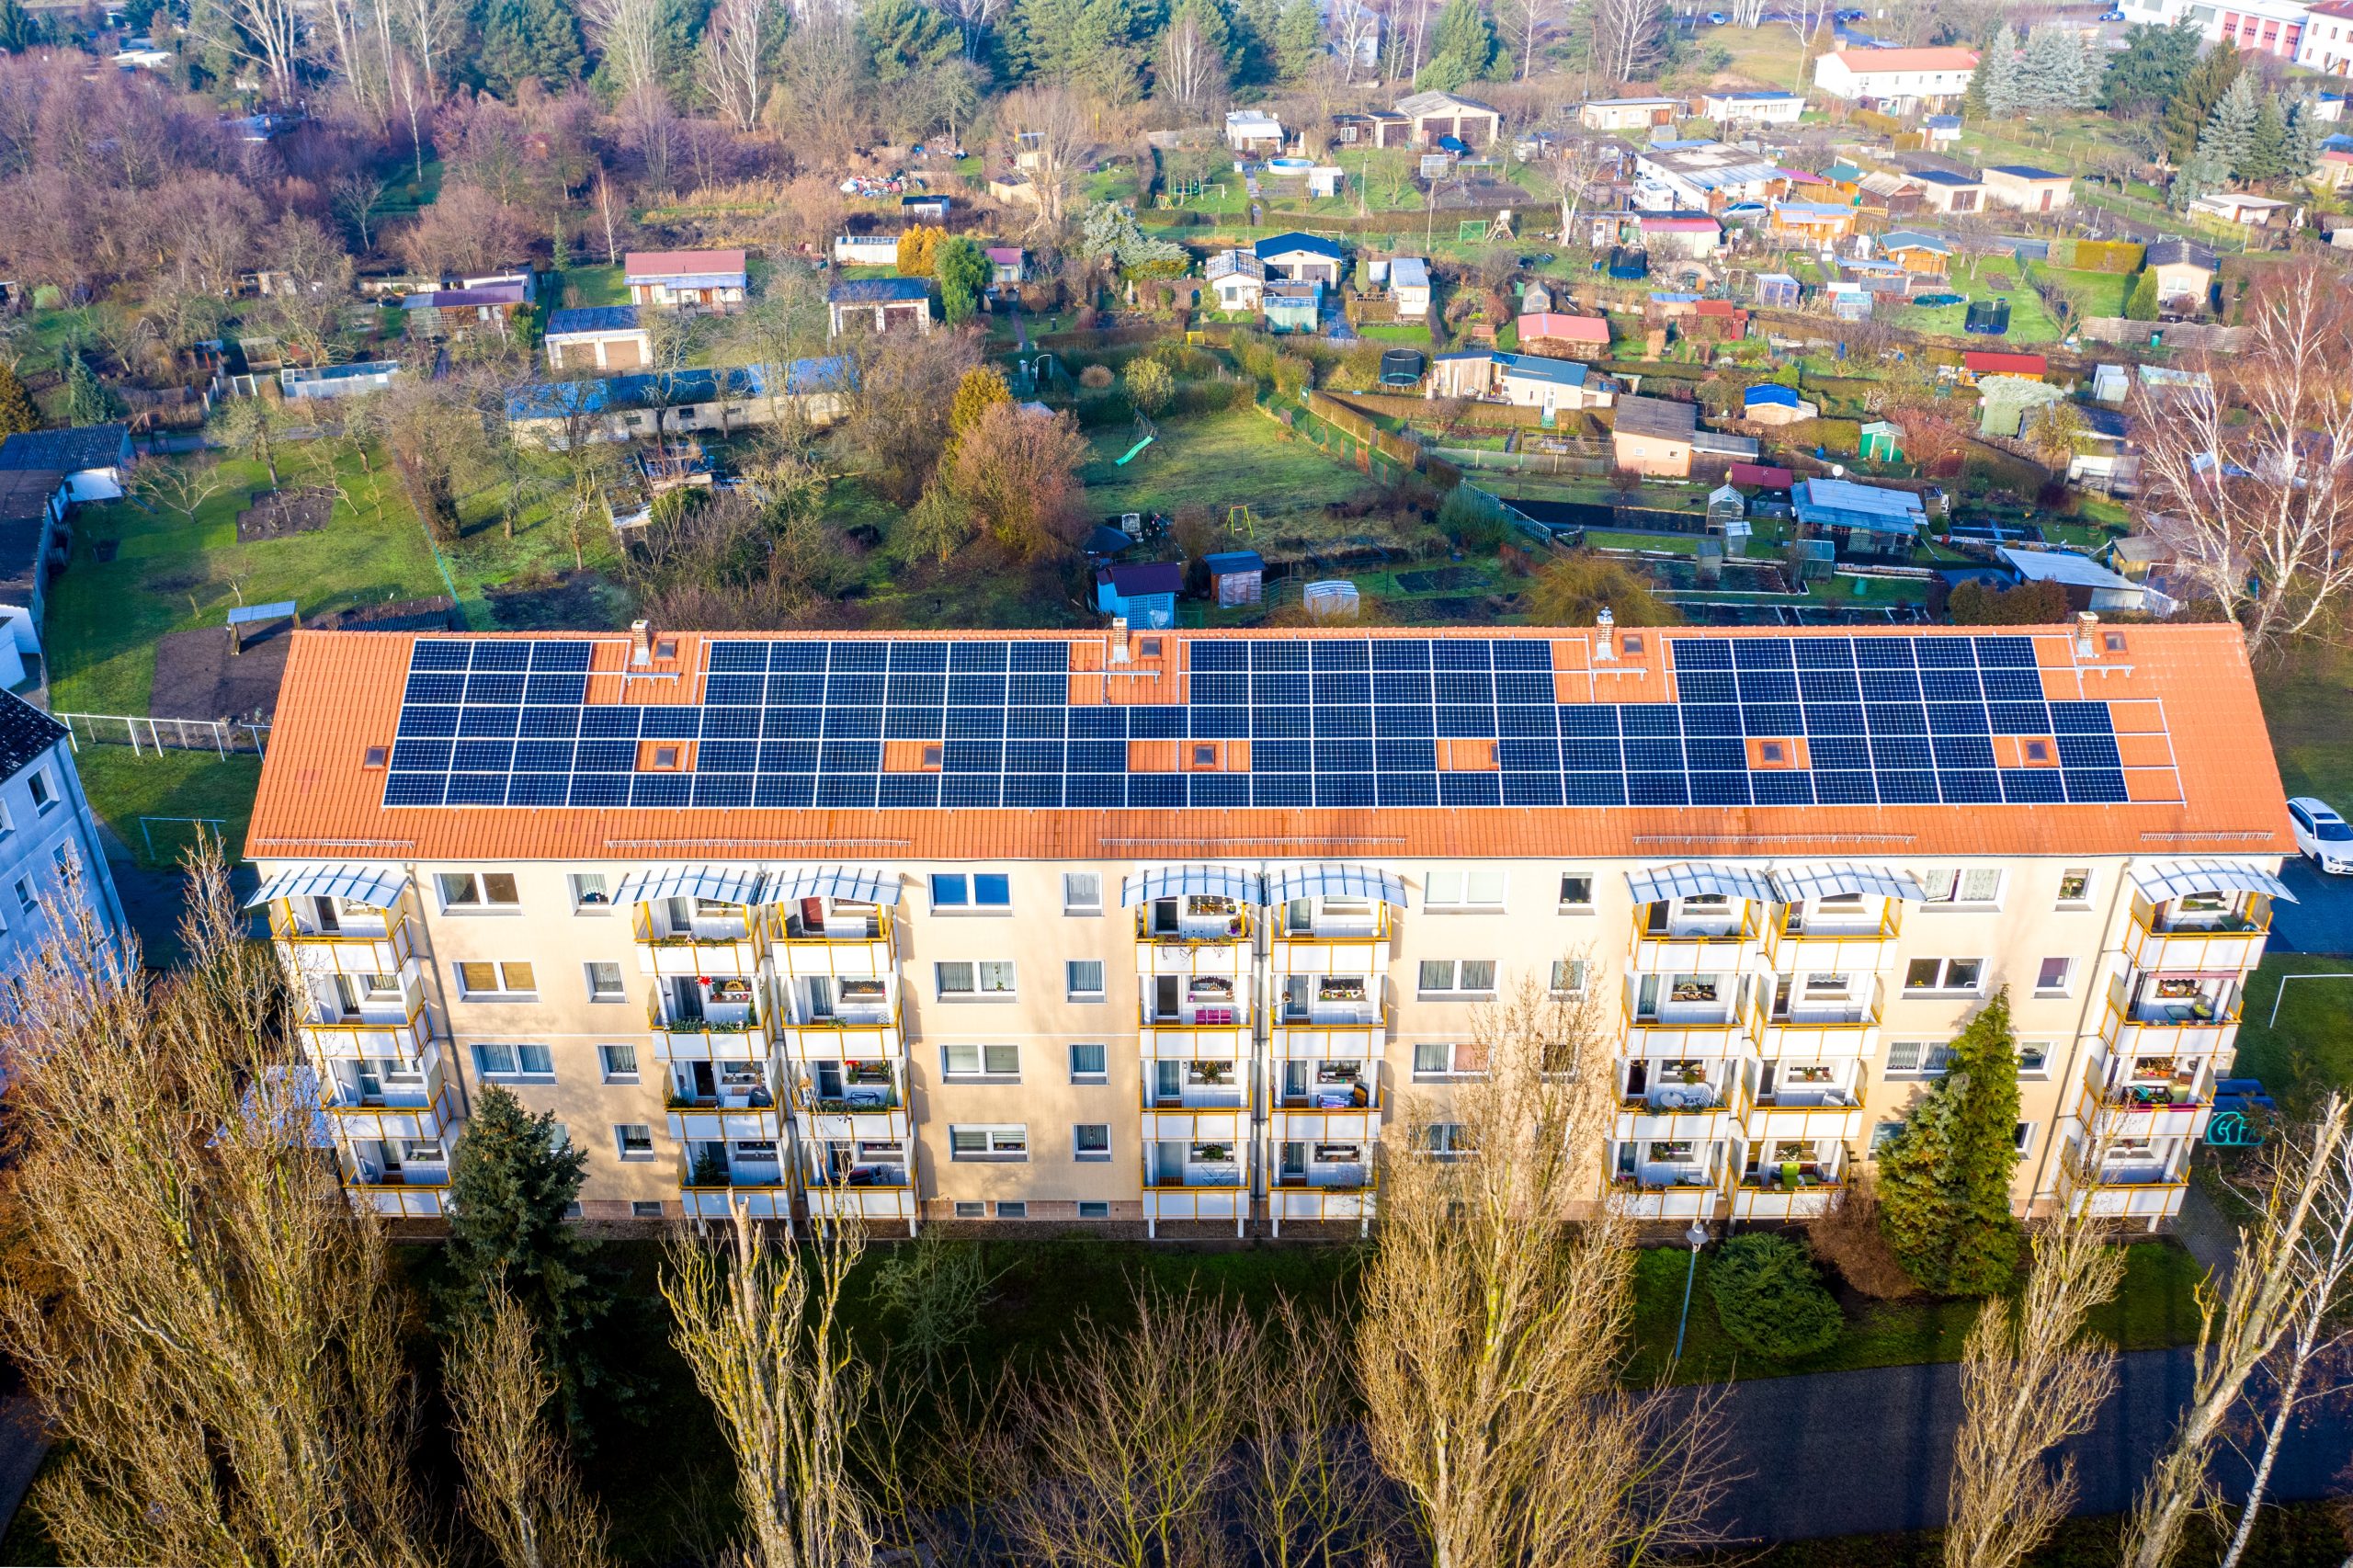 Las instalaciones de energía solar para autoconsumo son cada vez más habituales en España.